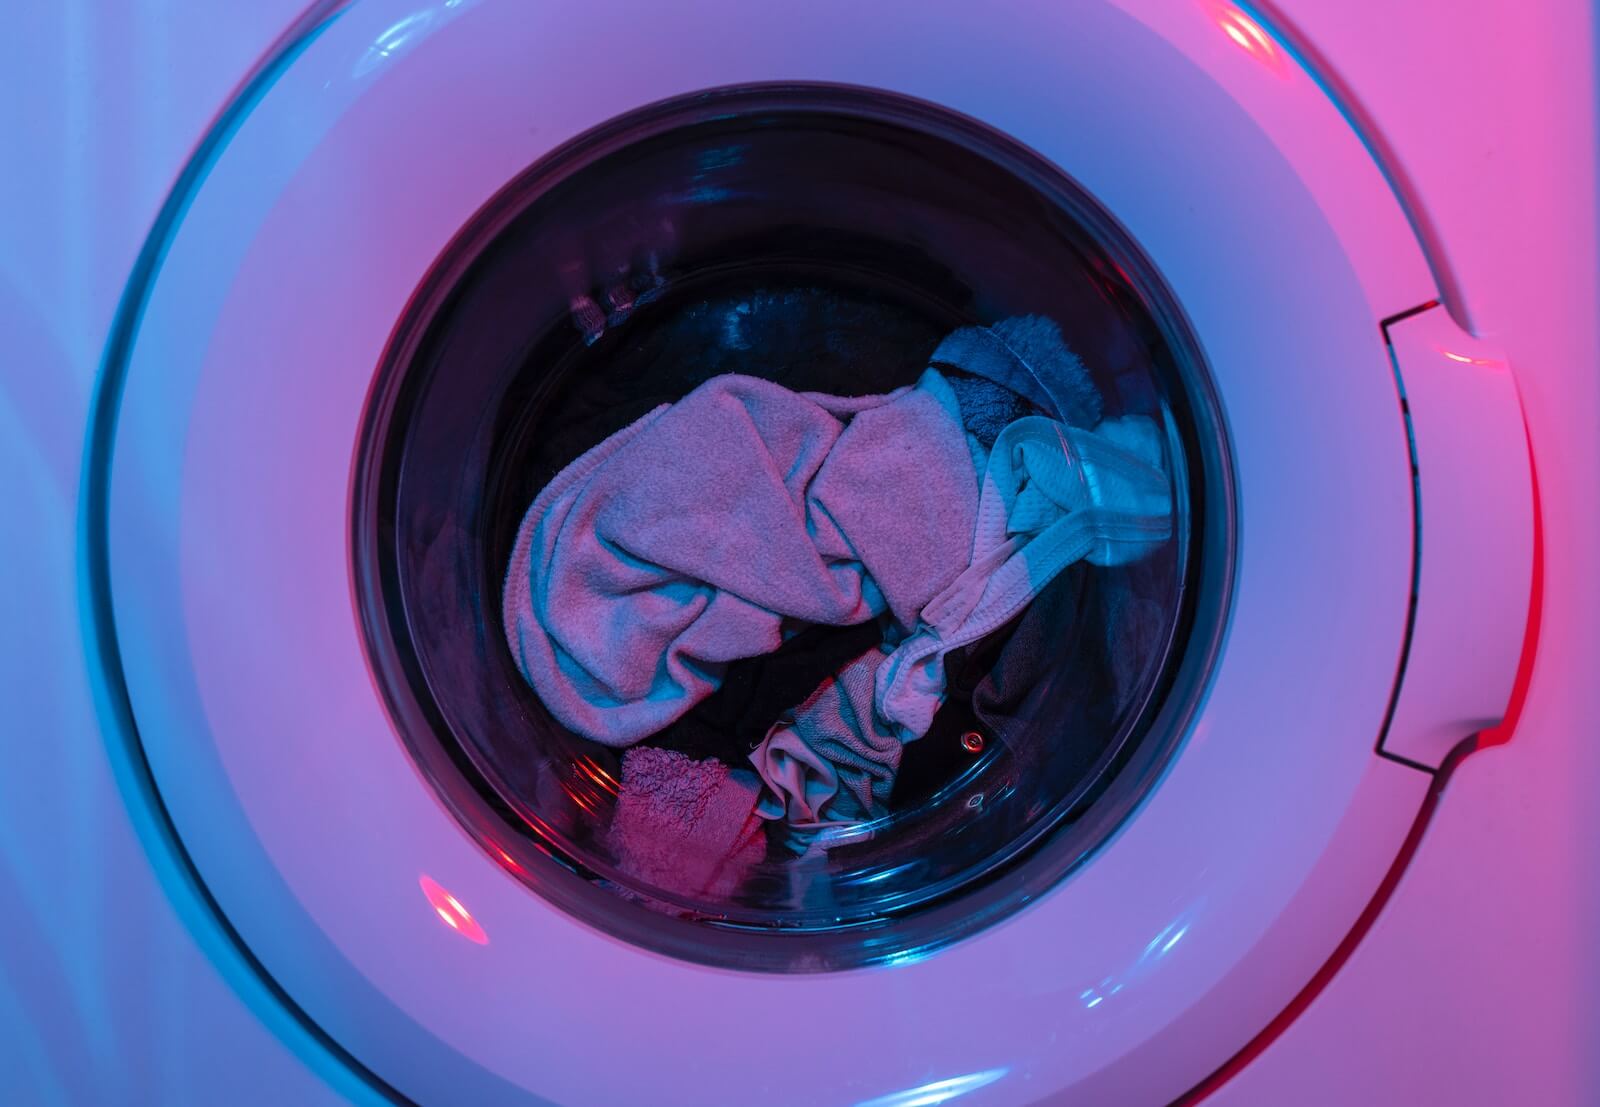 Comparativa de lavadora y secadora juntas y separadas - Blogs MAPFRE